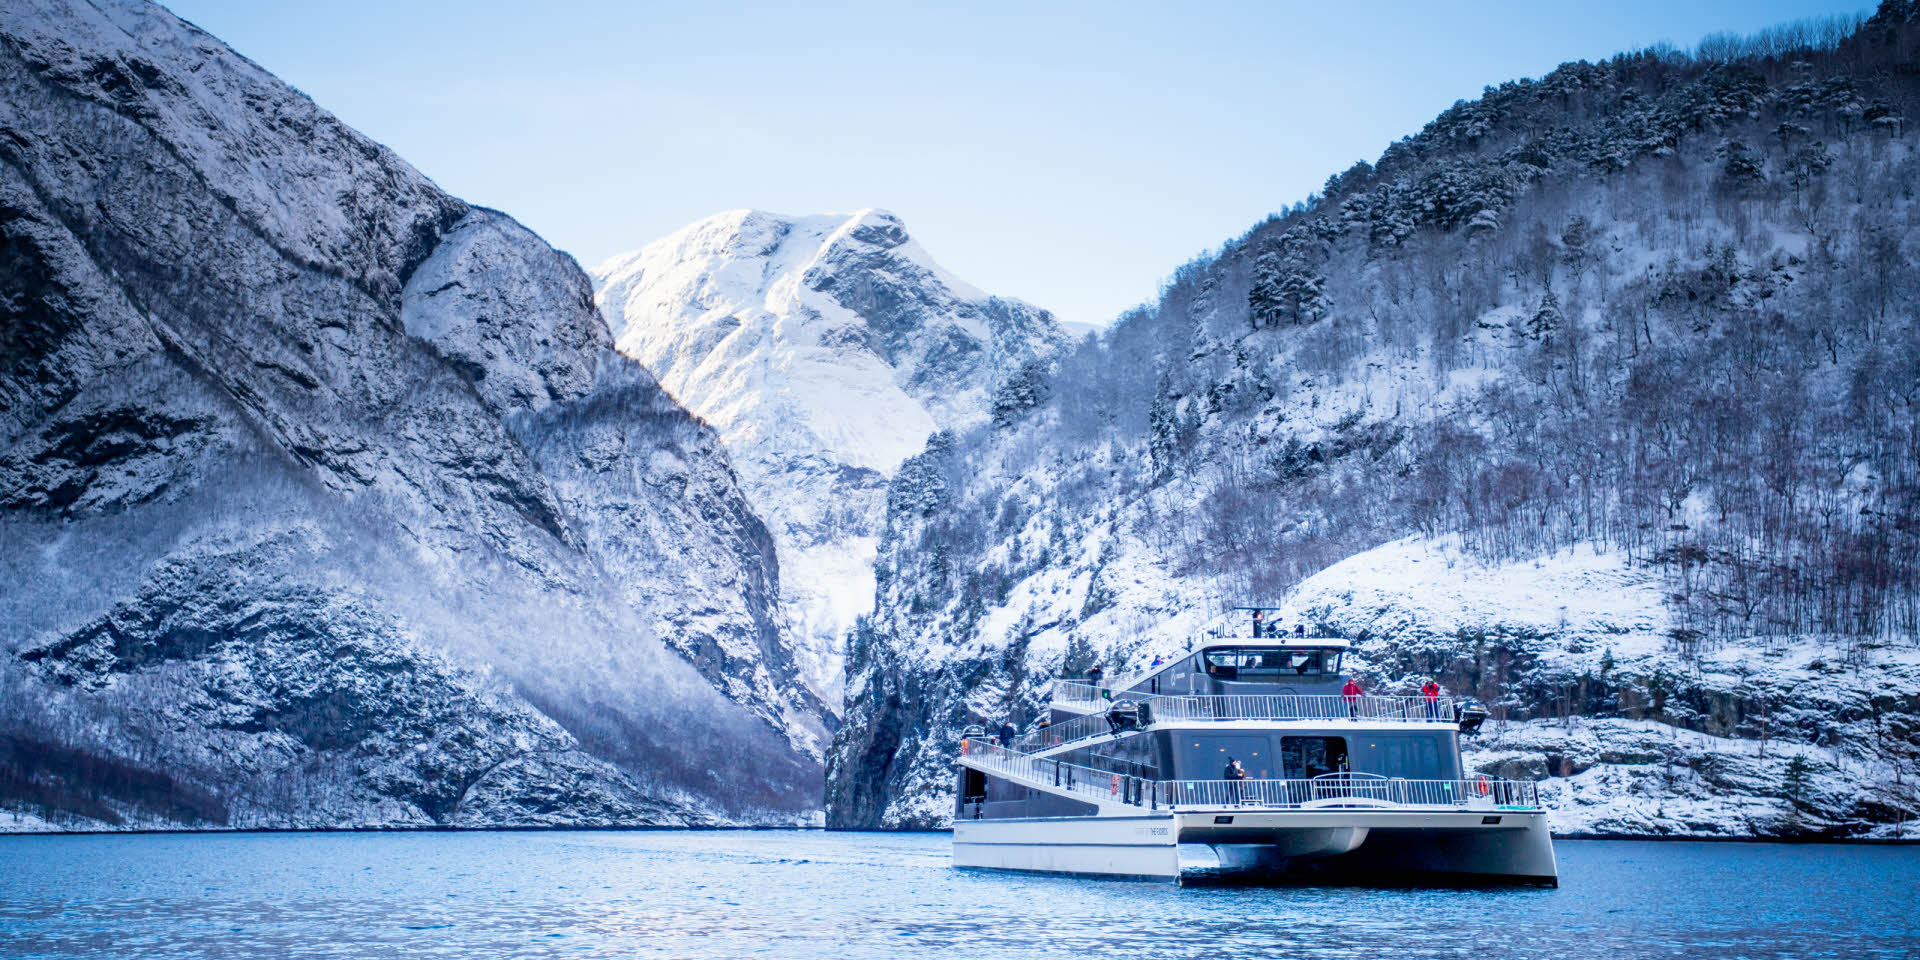 雪に覆われた山々に囲まれた冬のネーロイフィヨルドを航行する近代的な船